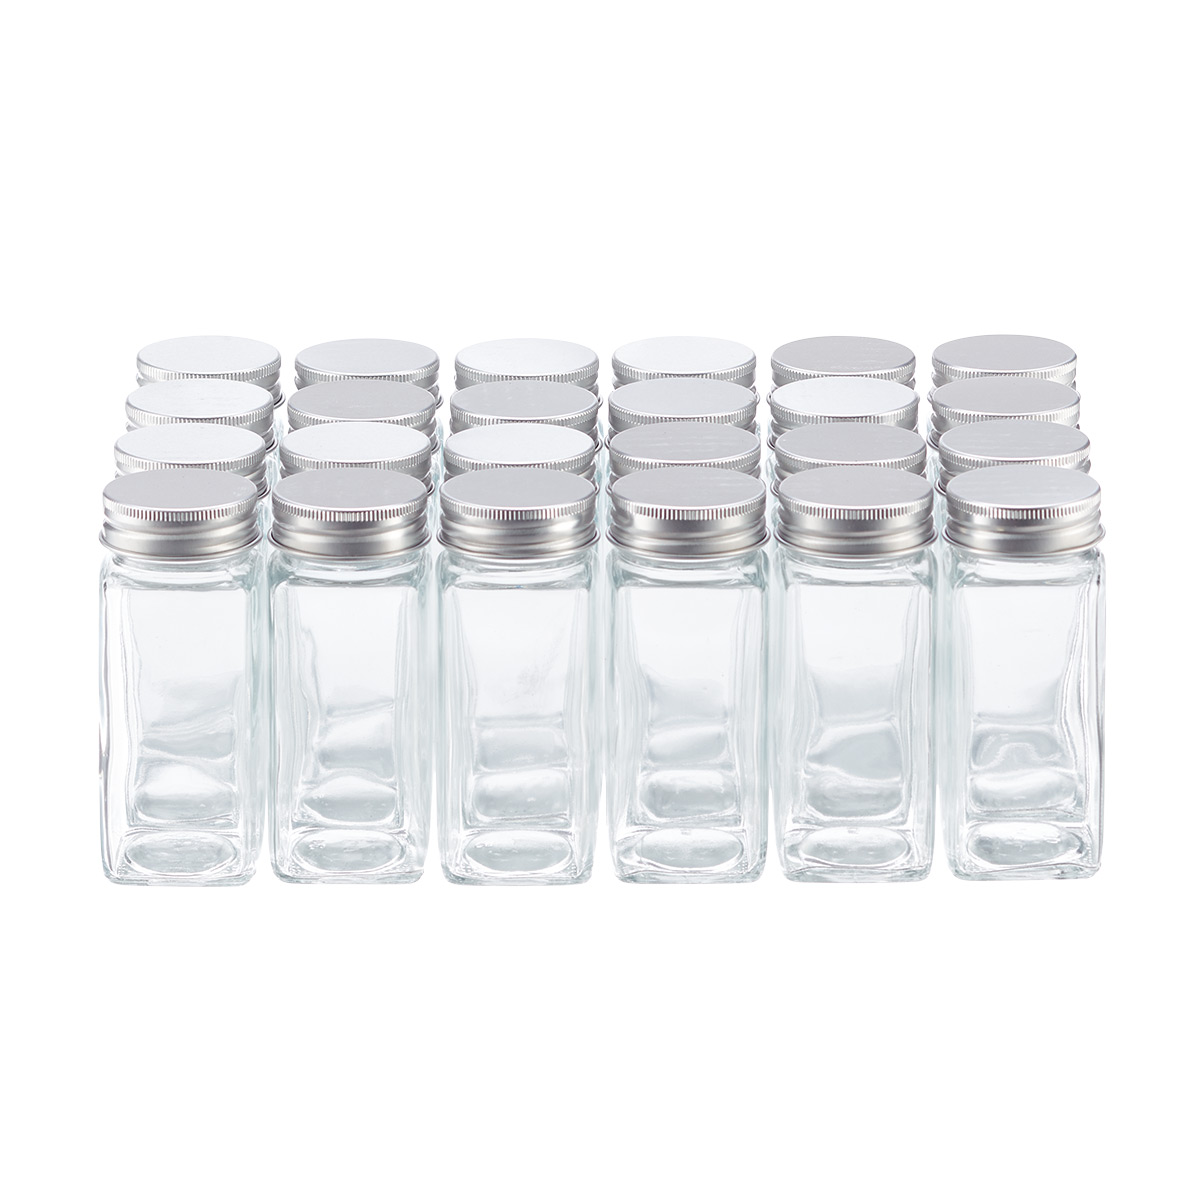 https://www.containerstore.com/catalogimages/490035/10090440-3oz-spice-bottle-aluminum-l.jpg